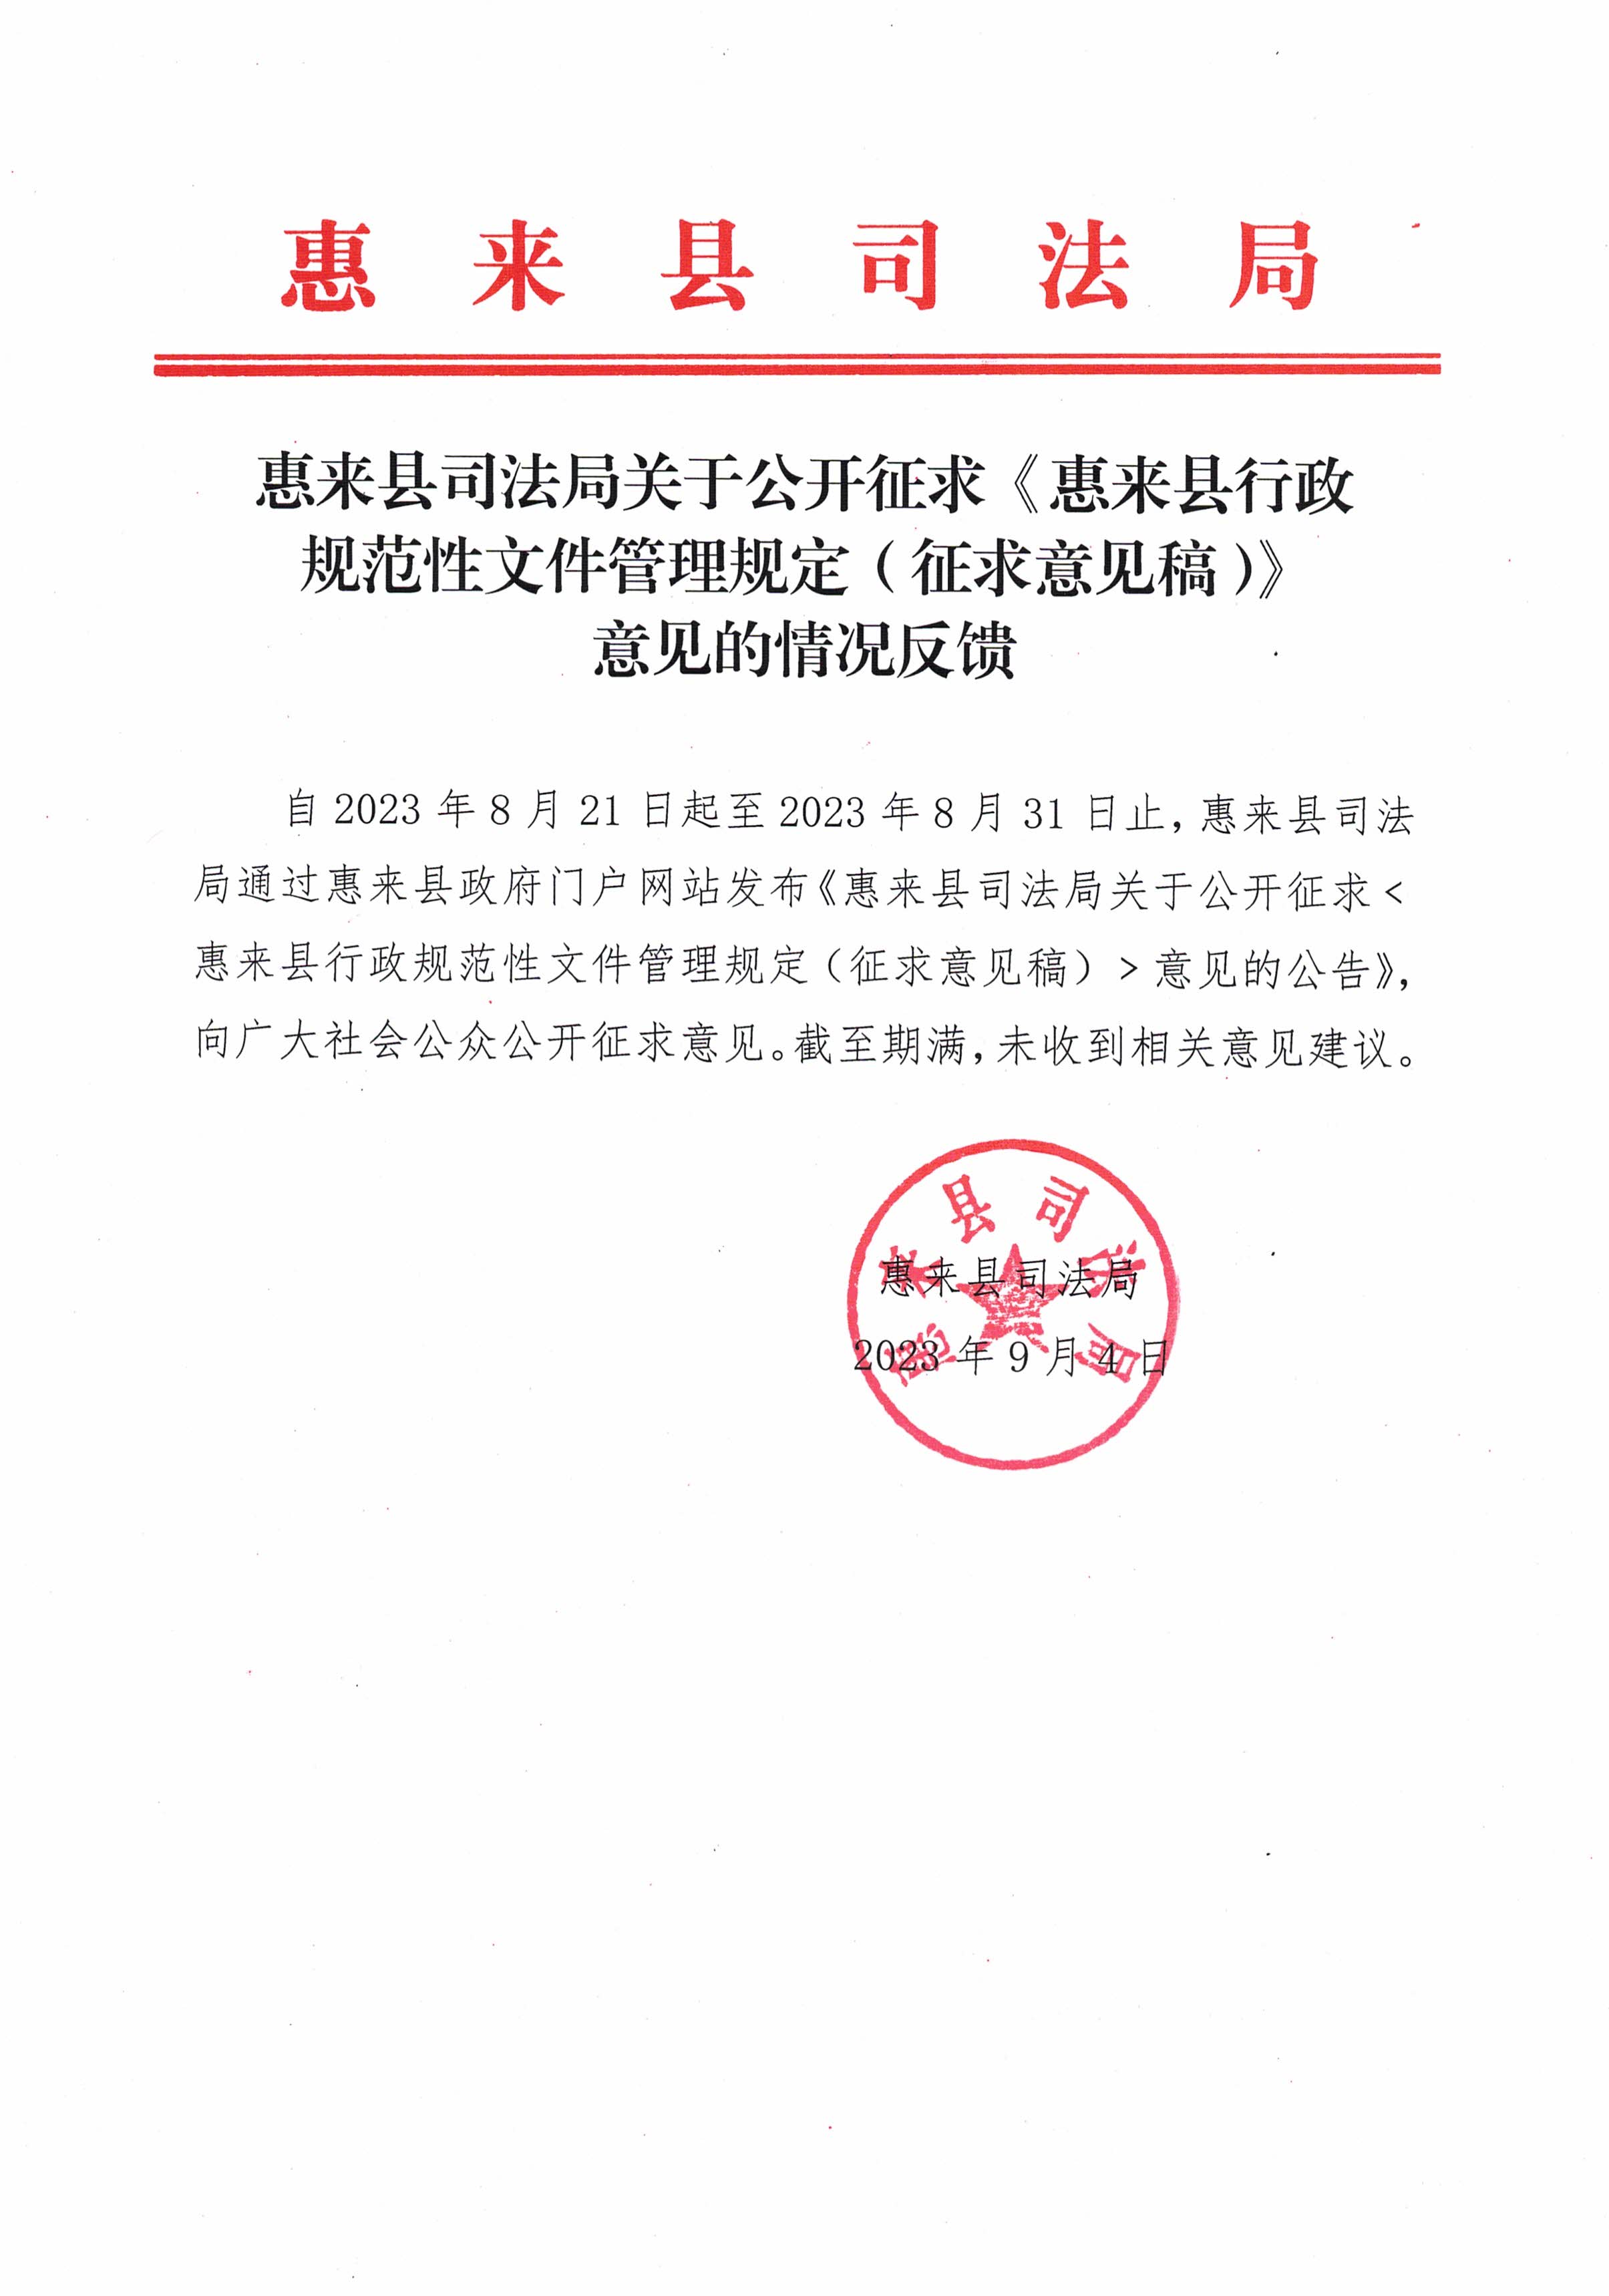 惠来县司法局关于公开征求《惠来县行政规范性文件管理规定（征求意见稿）》意见的情况反馈.jpg